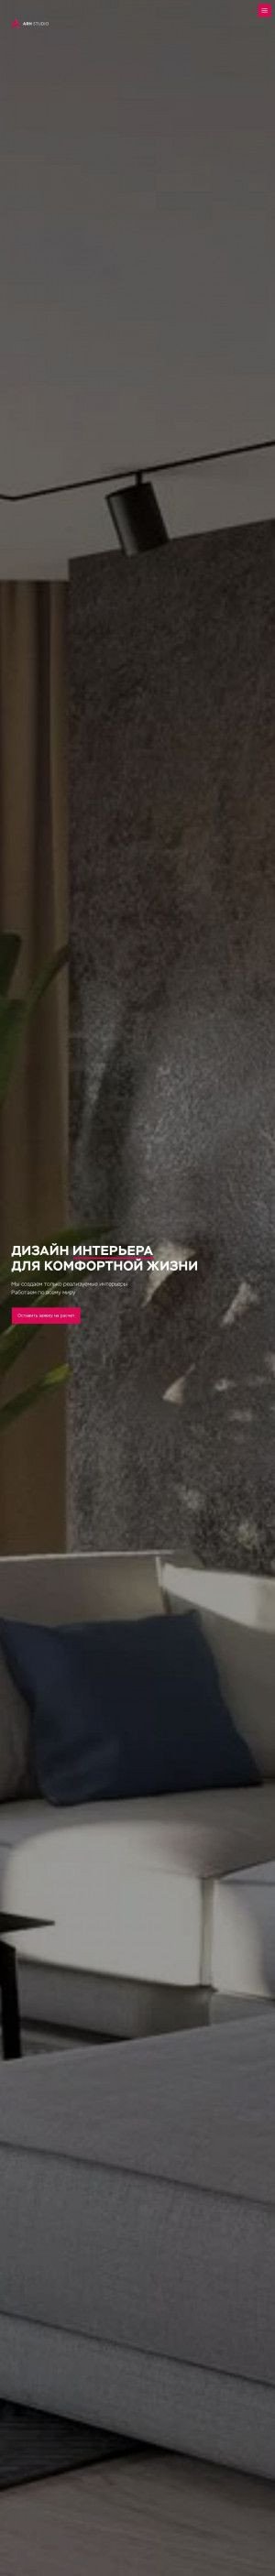 Предпросмотр для www.arhstd.ru — Arh Studio